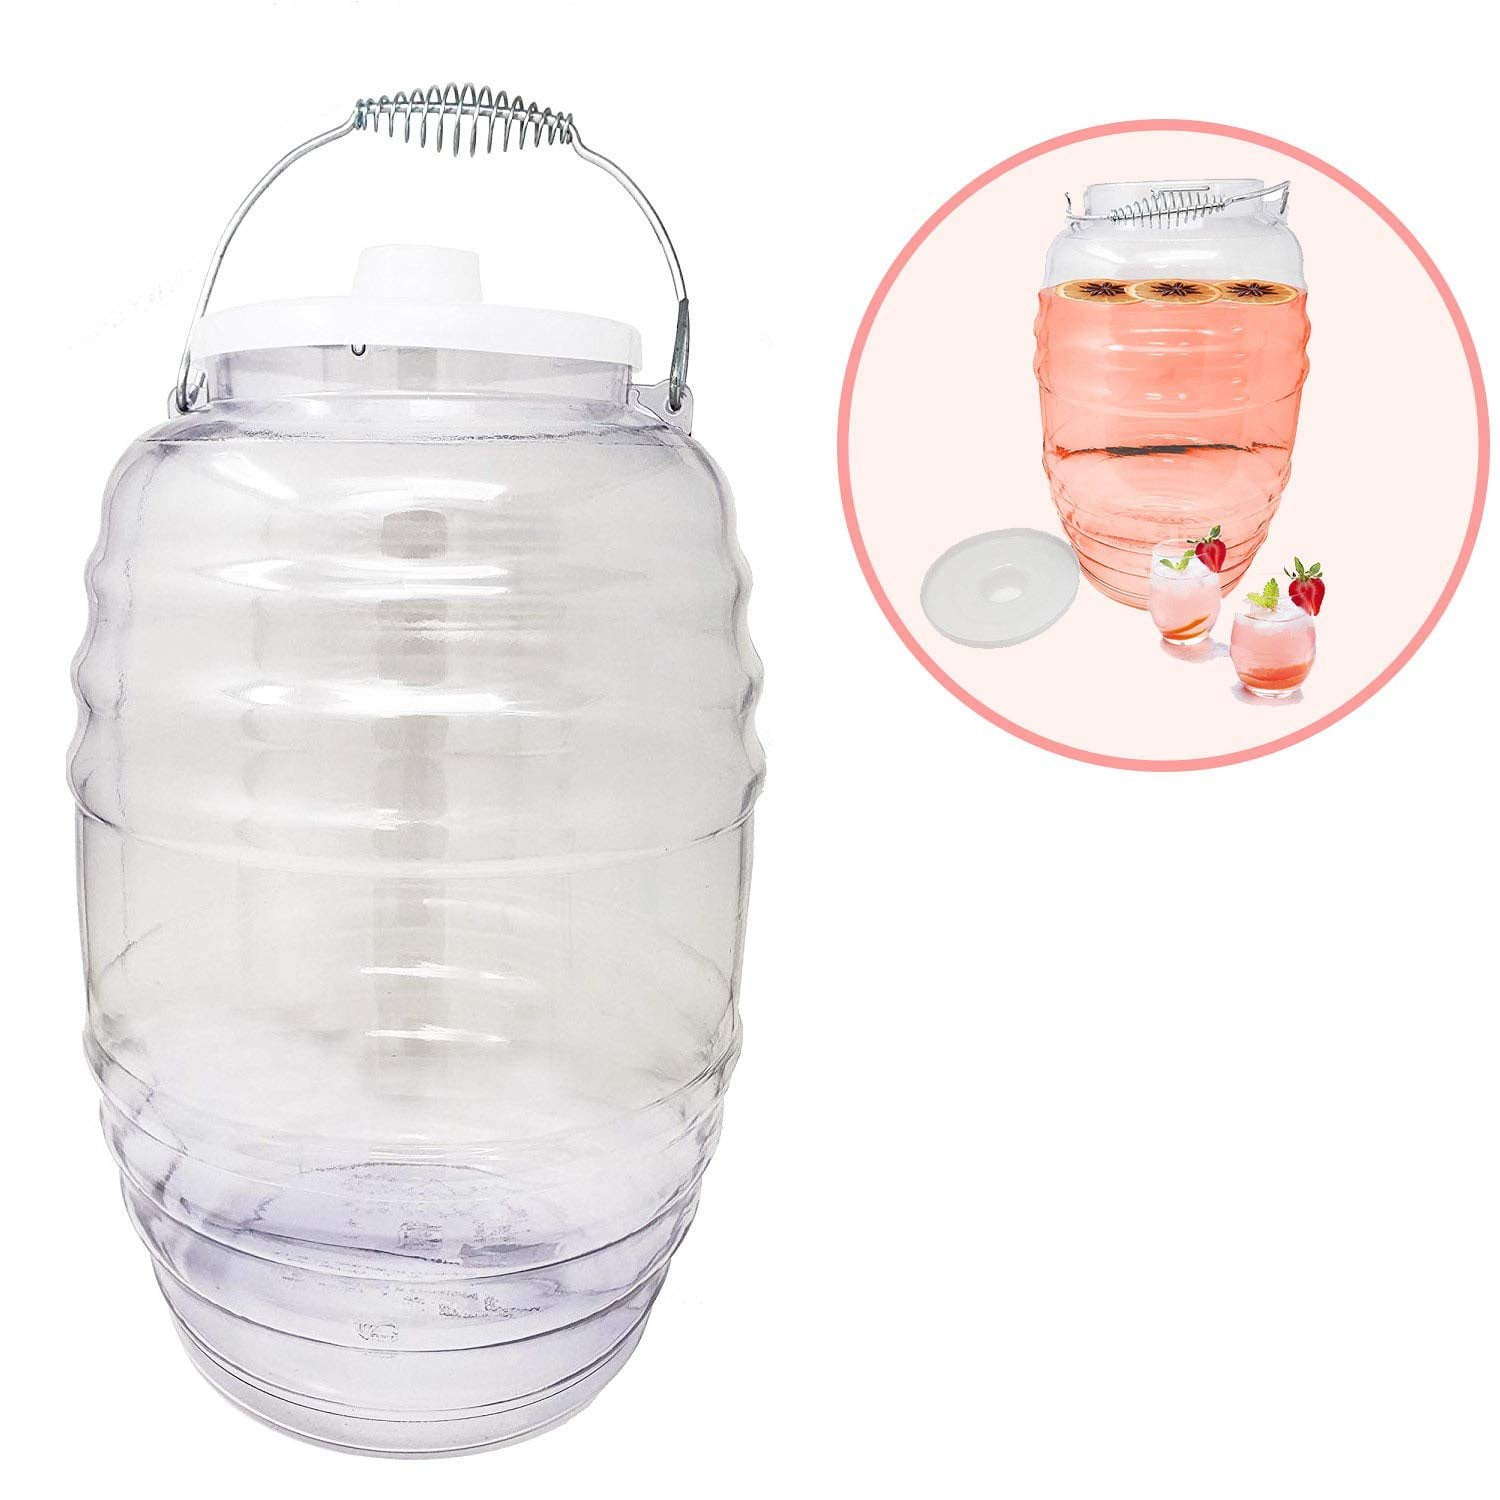 Aguas Frescas Vitrolero - Paquete de 2 jarras de 5 galones con tapa,  servilletas incluidas para fiestas, dispensador de bebidas grande ideal  para agua